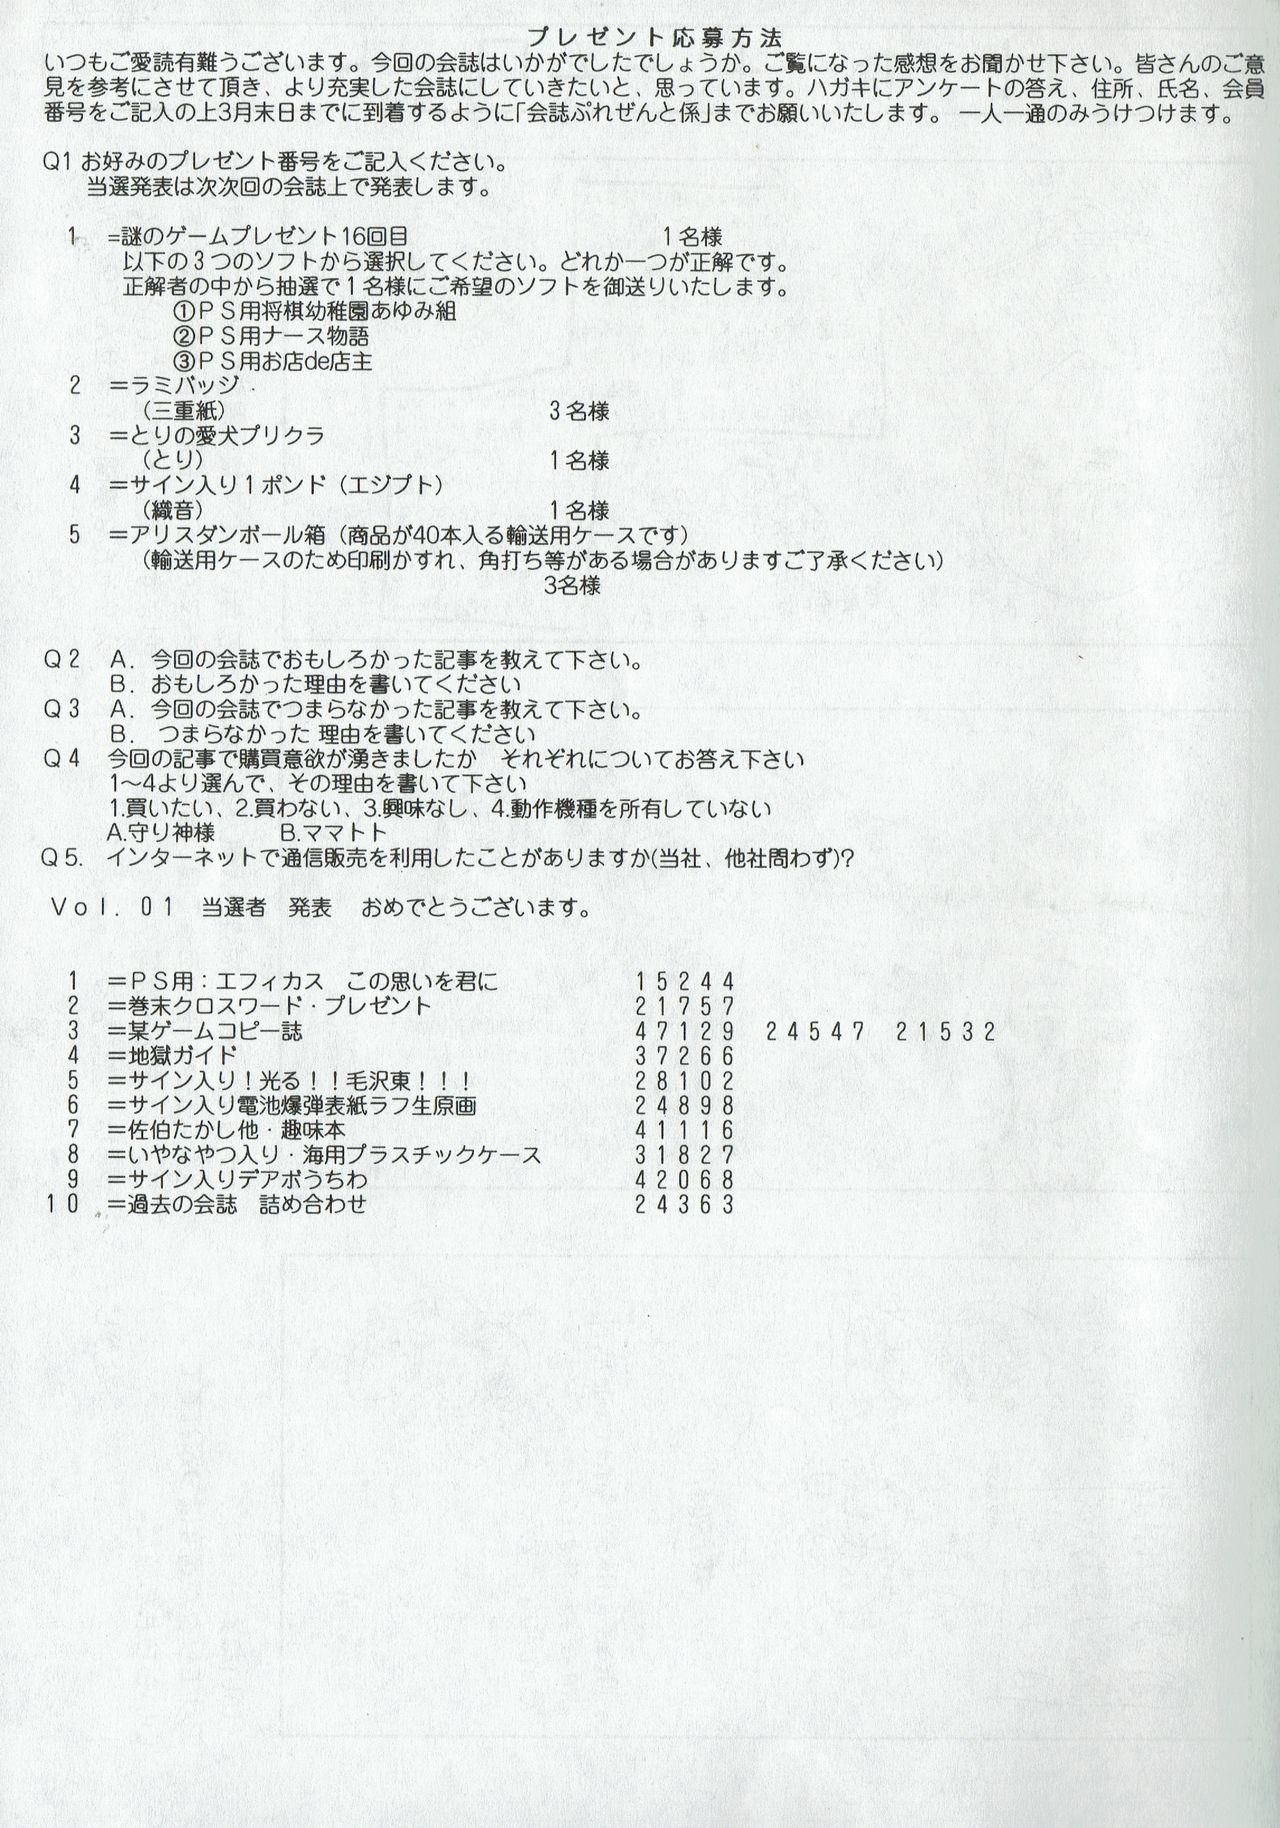 Arisu no Denchi Bakudan Vol. 03 27